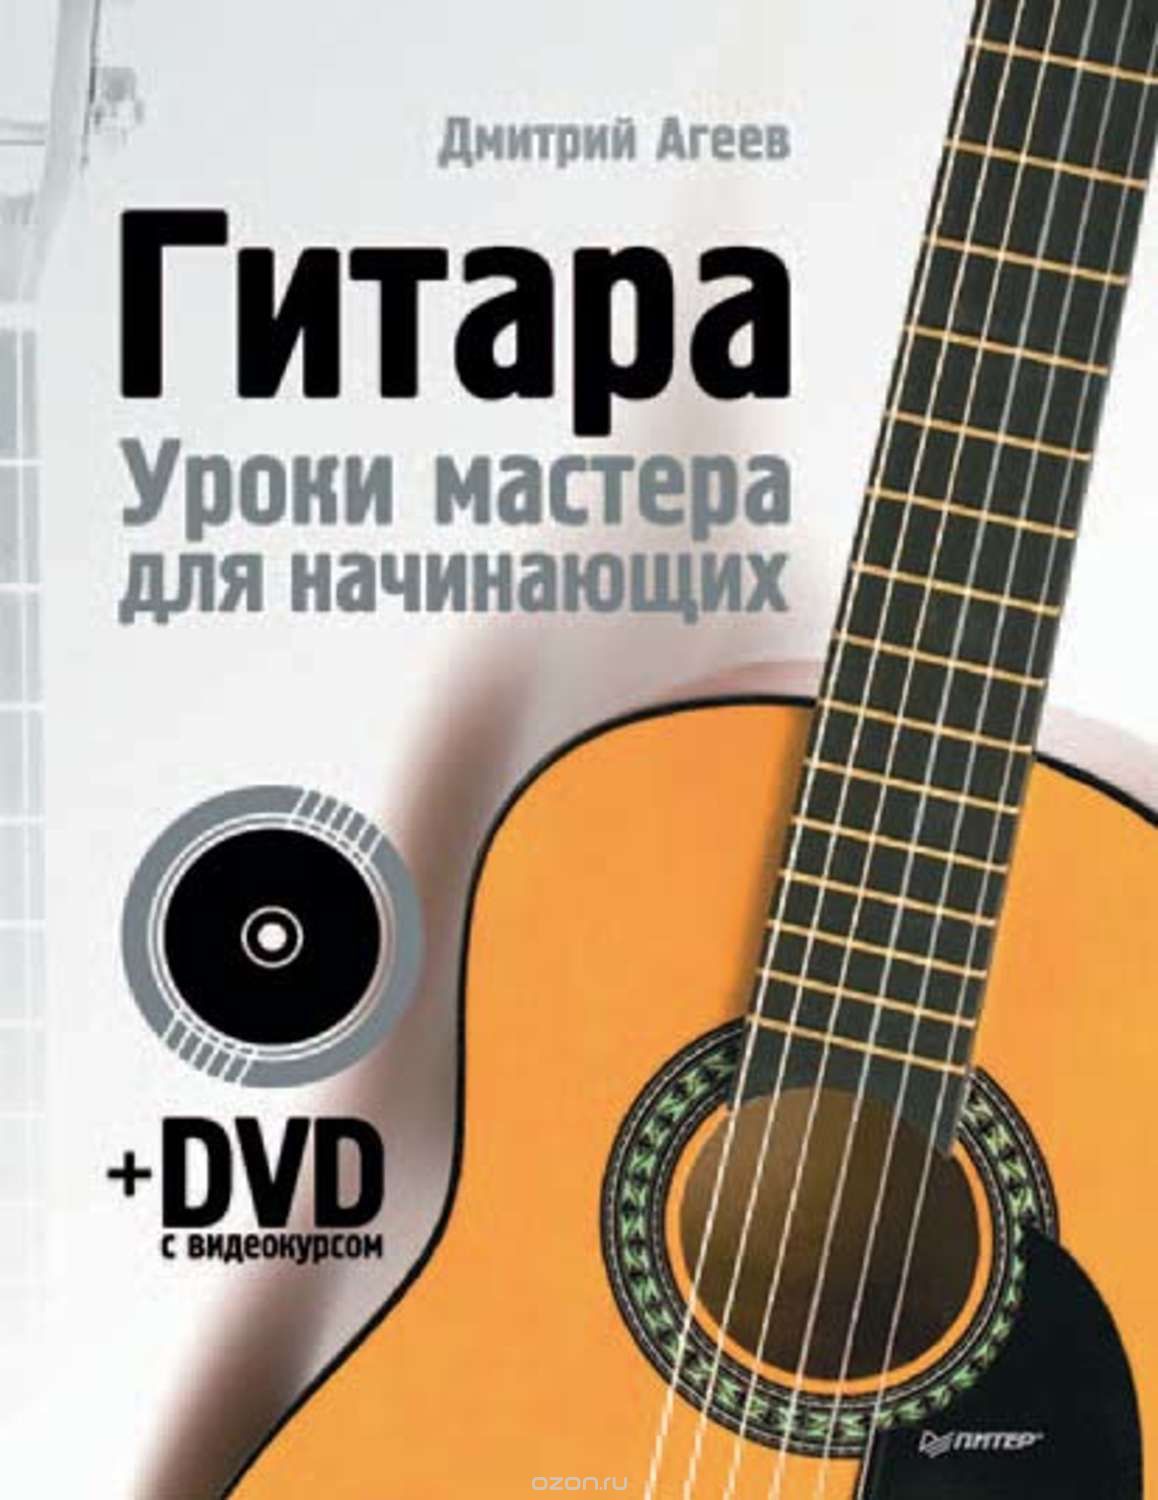 Постер Гитара. Уроки мастера для начинающих Дмитрий Агеев